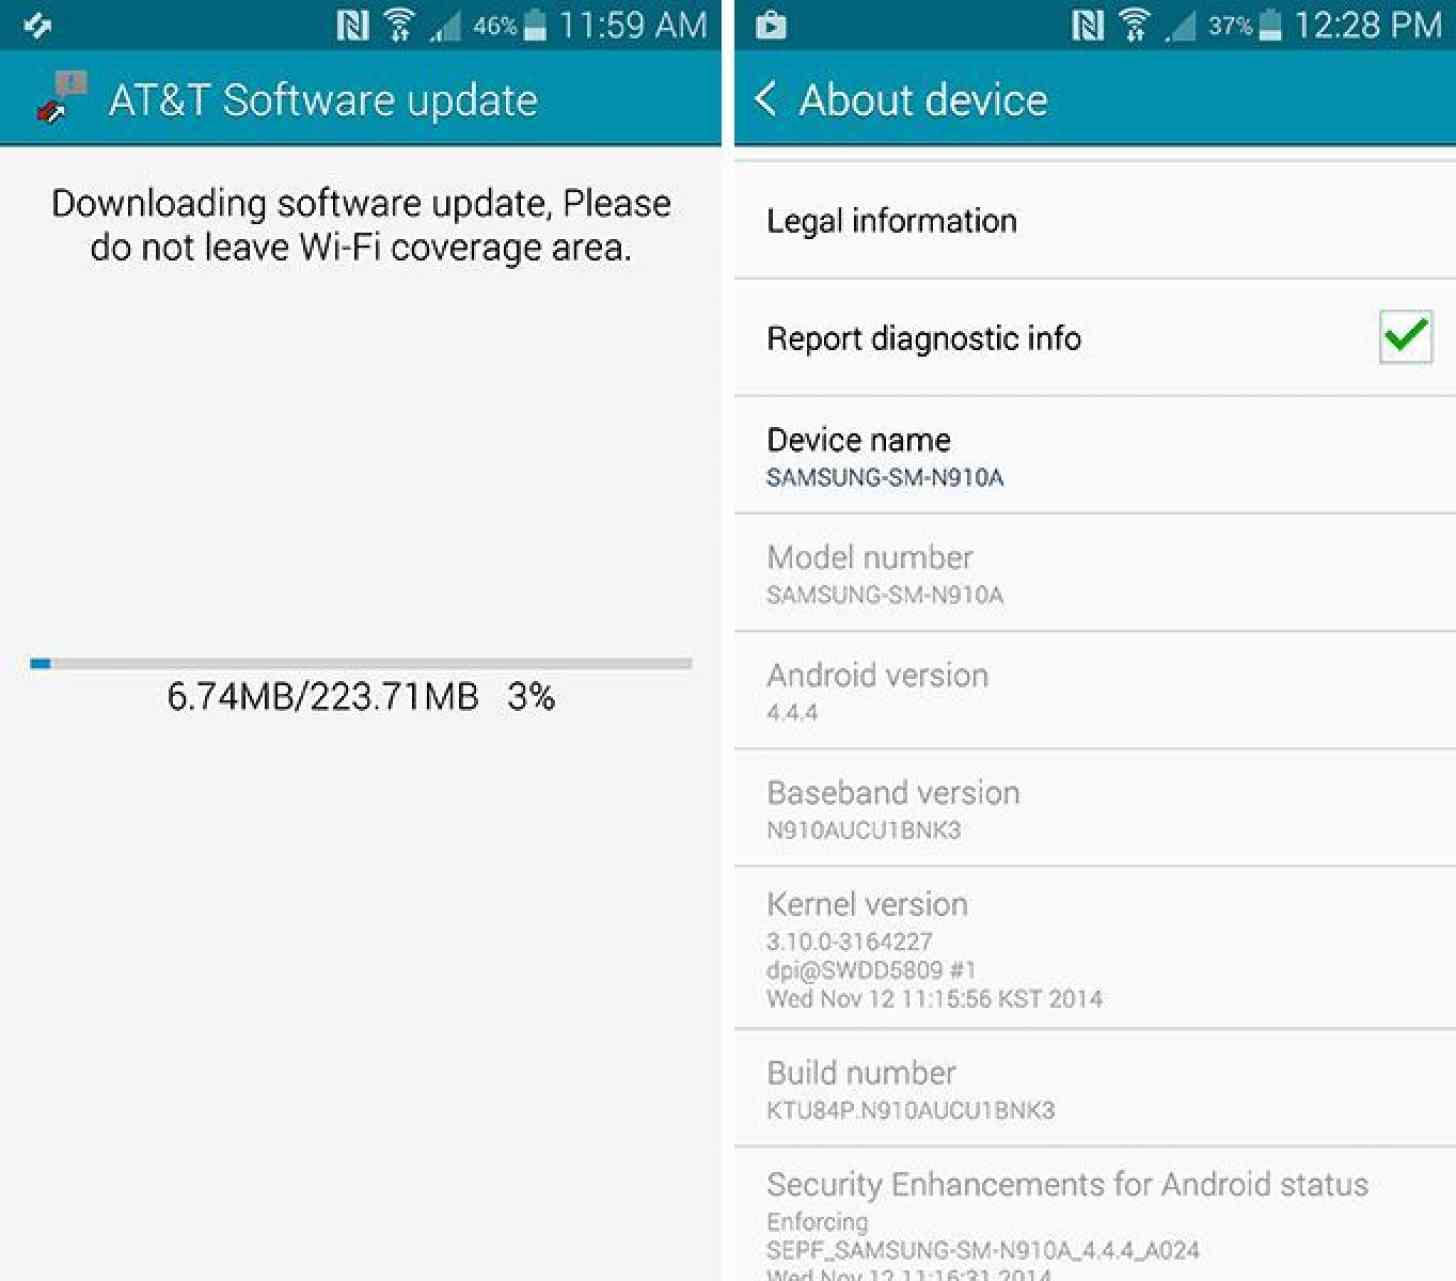 AT&T Samsung Galaxy Note 4 AUCU1BNK3 update